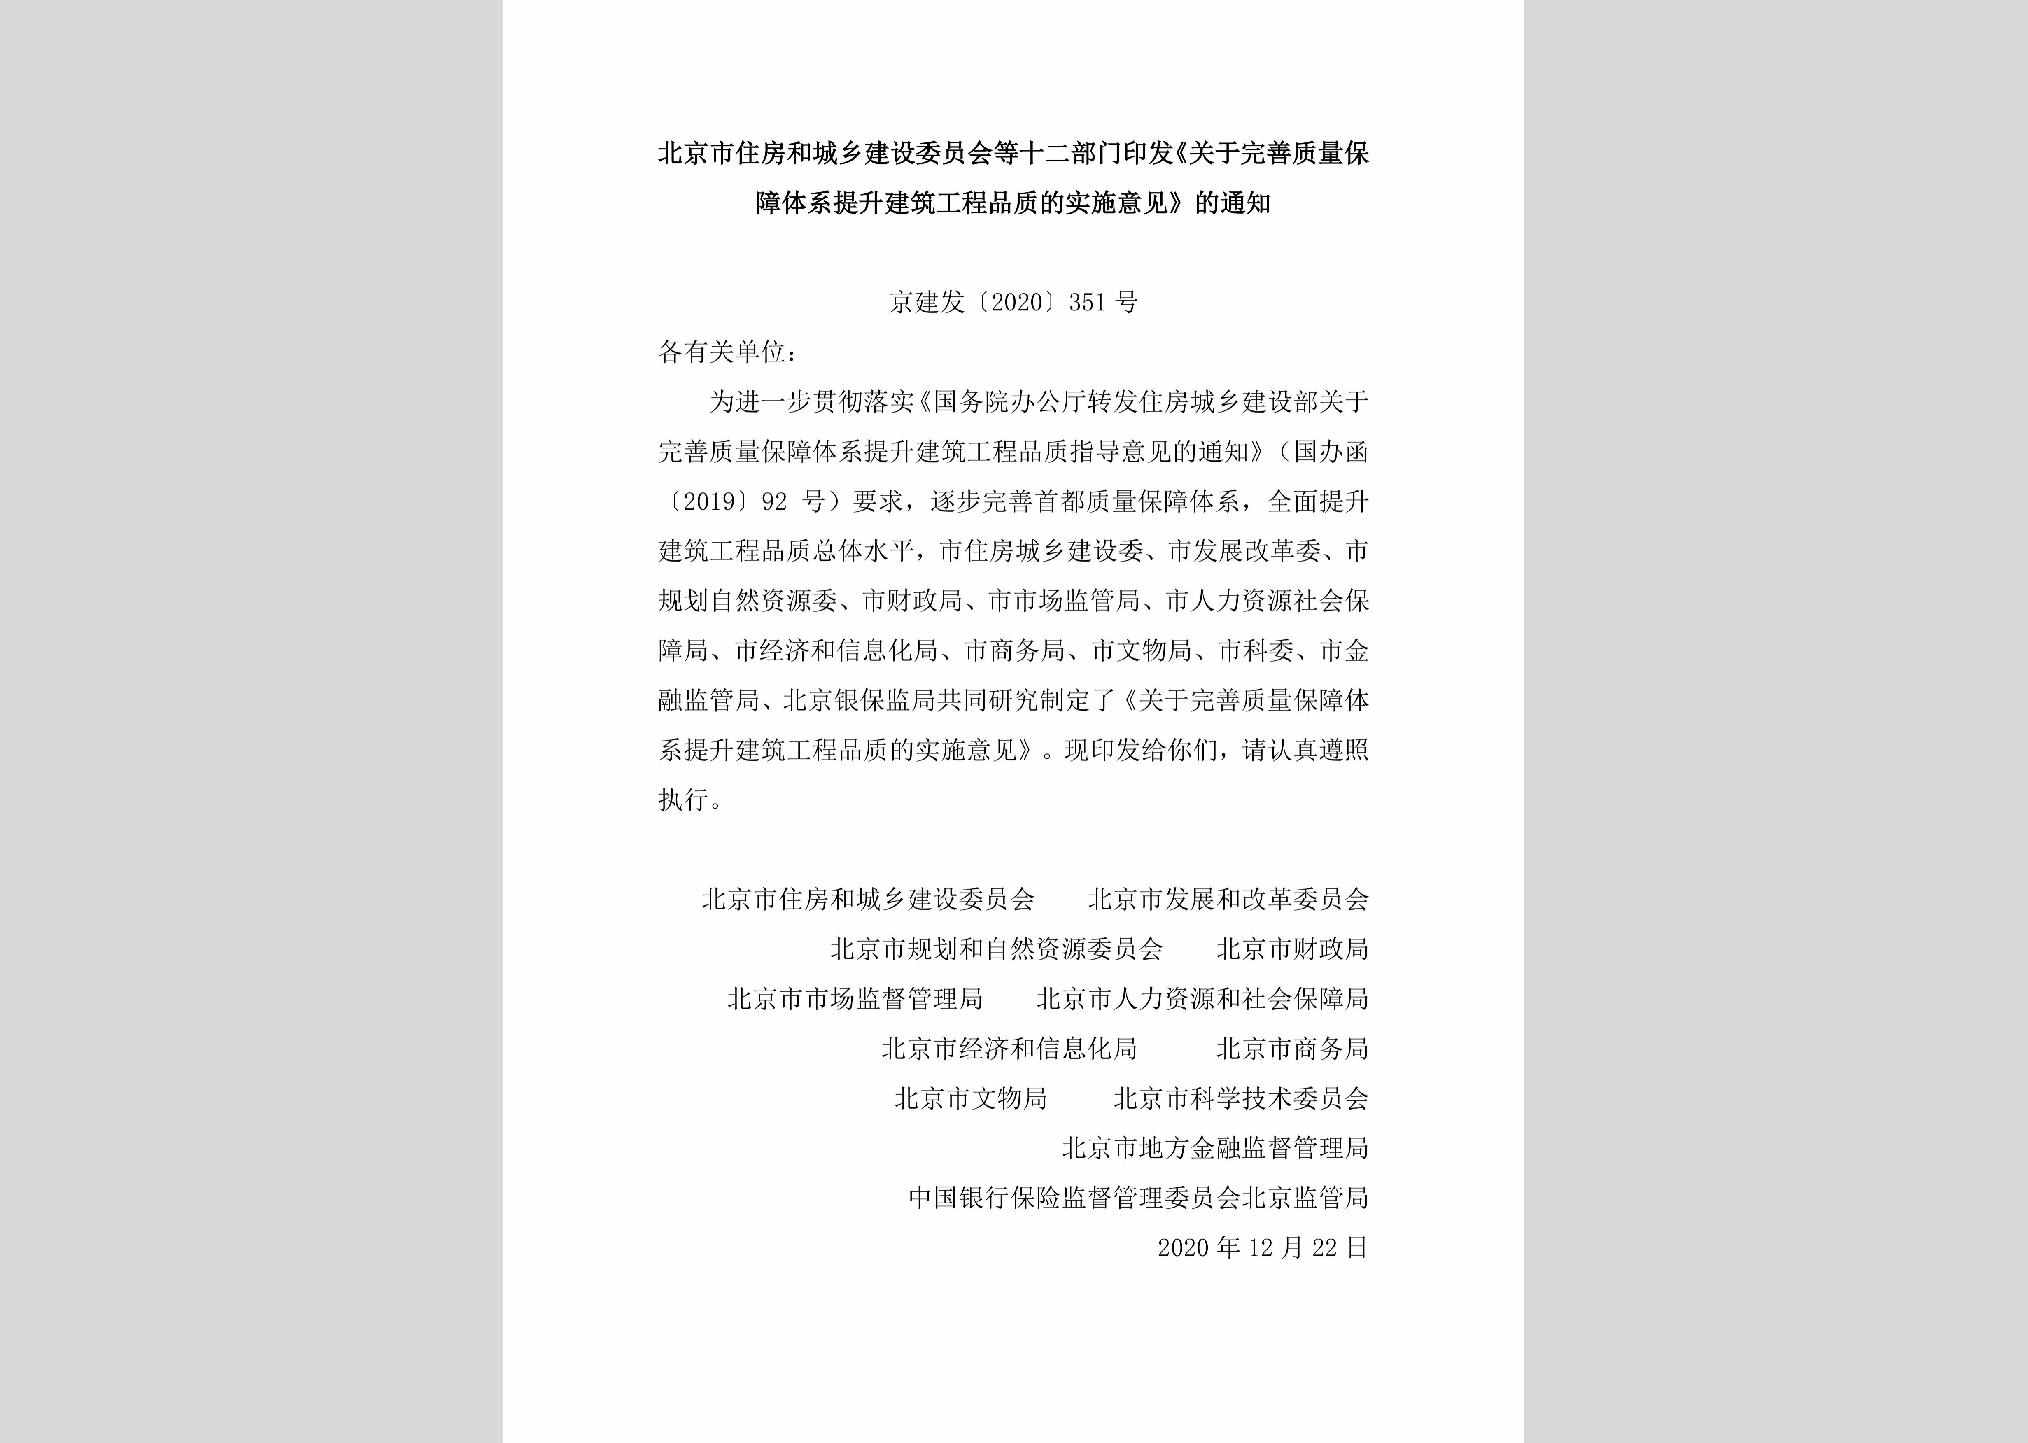 京建发[2020]351号：北京市住房和城乡建设委员会等十二部门印发《关于完善质量保障体系提升建筑工程品质的实施意见》的通知